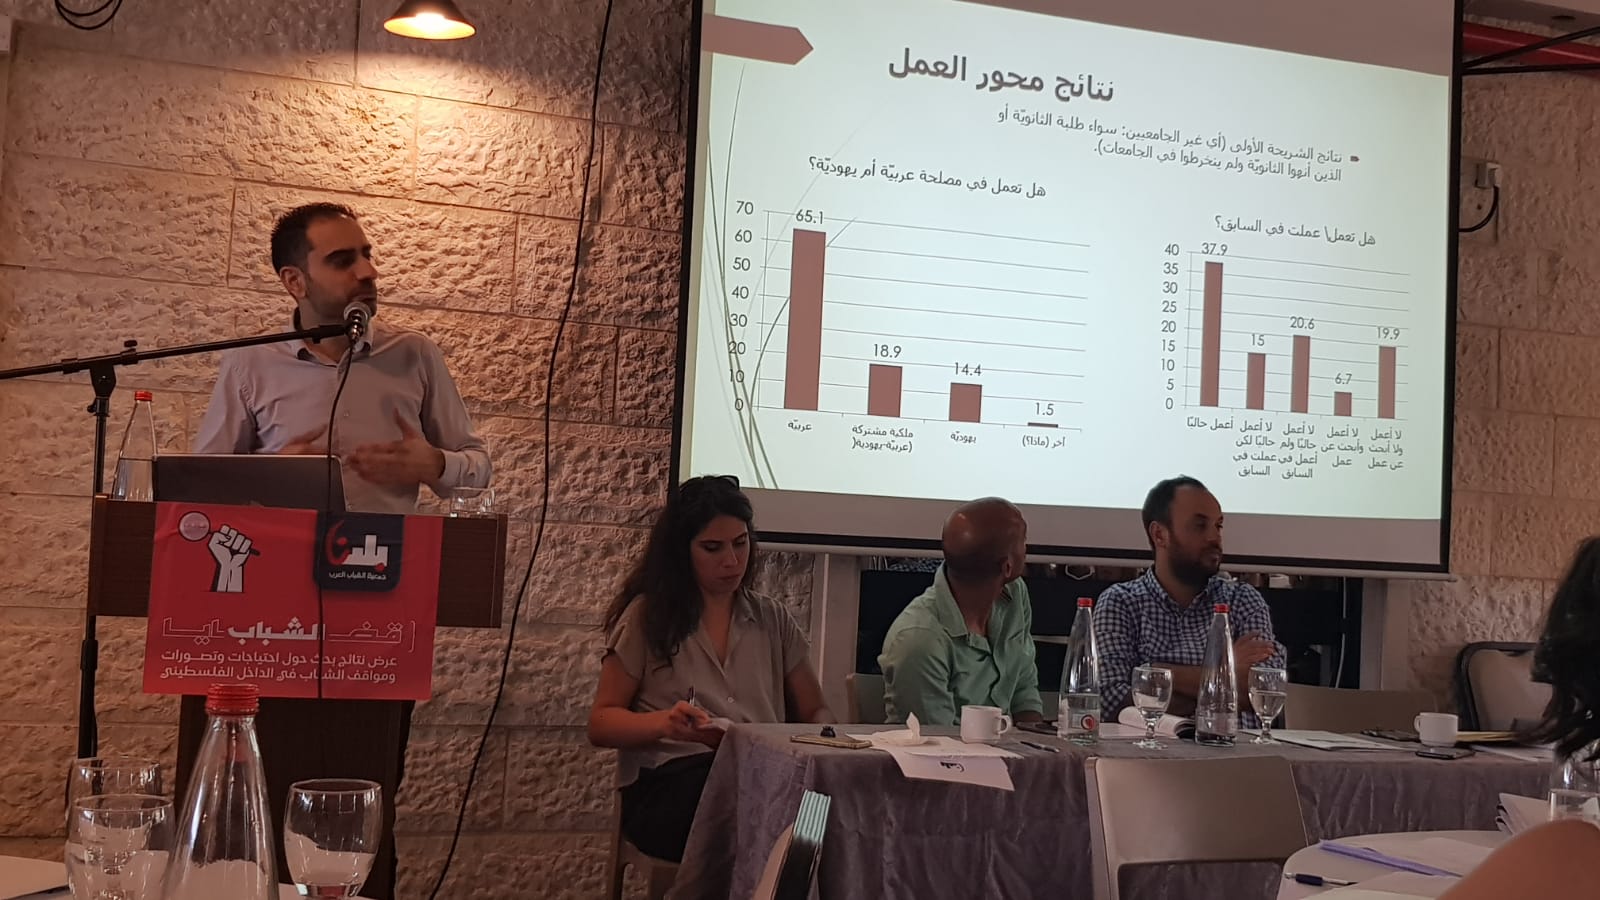 مؤتمر قضايا الشباب: عرض نتائج بحث حول احتياجات وتصورات ومواقف الشباب في الداخل الفلسطيني.